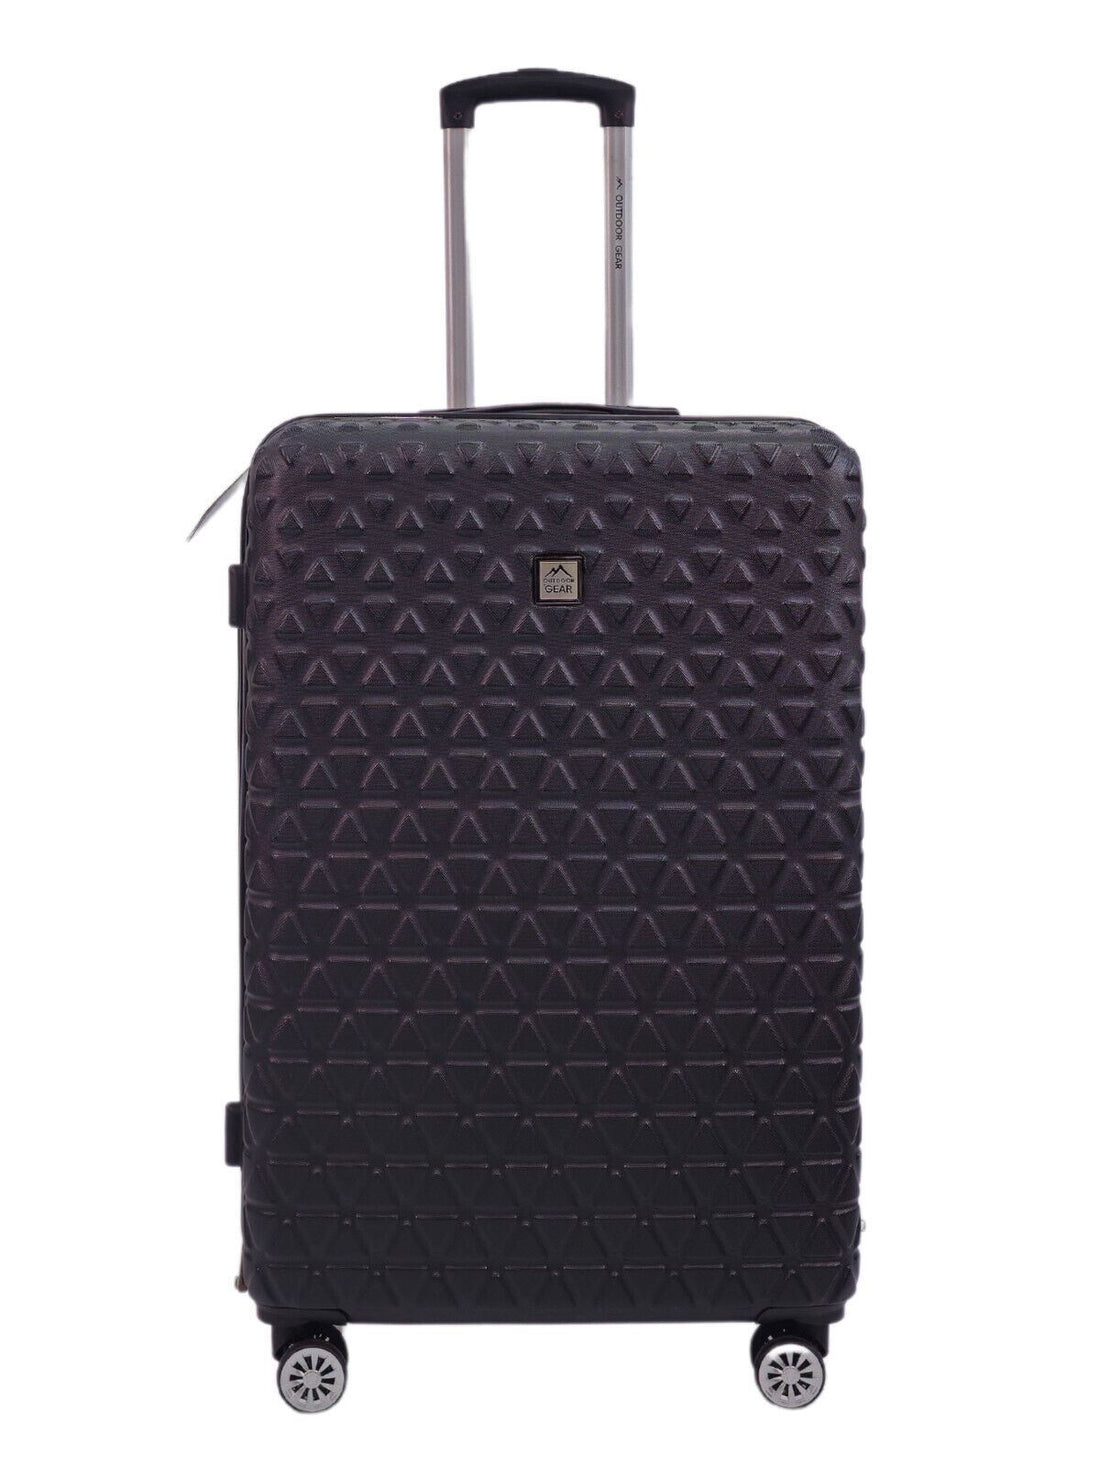 Hardshell Black Suitcase Robust 8 Wheel Luggage Cabin Bag